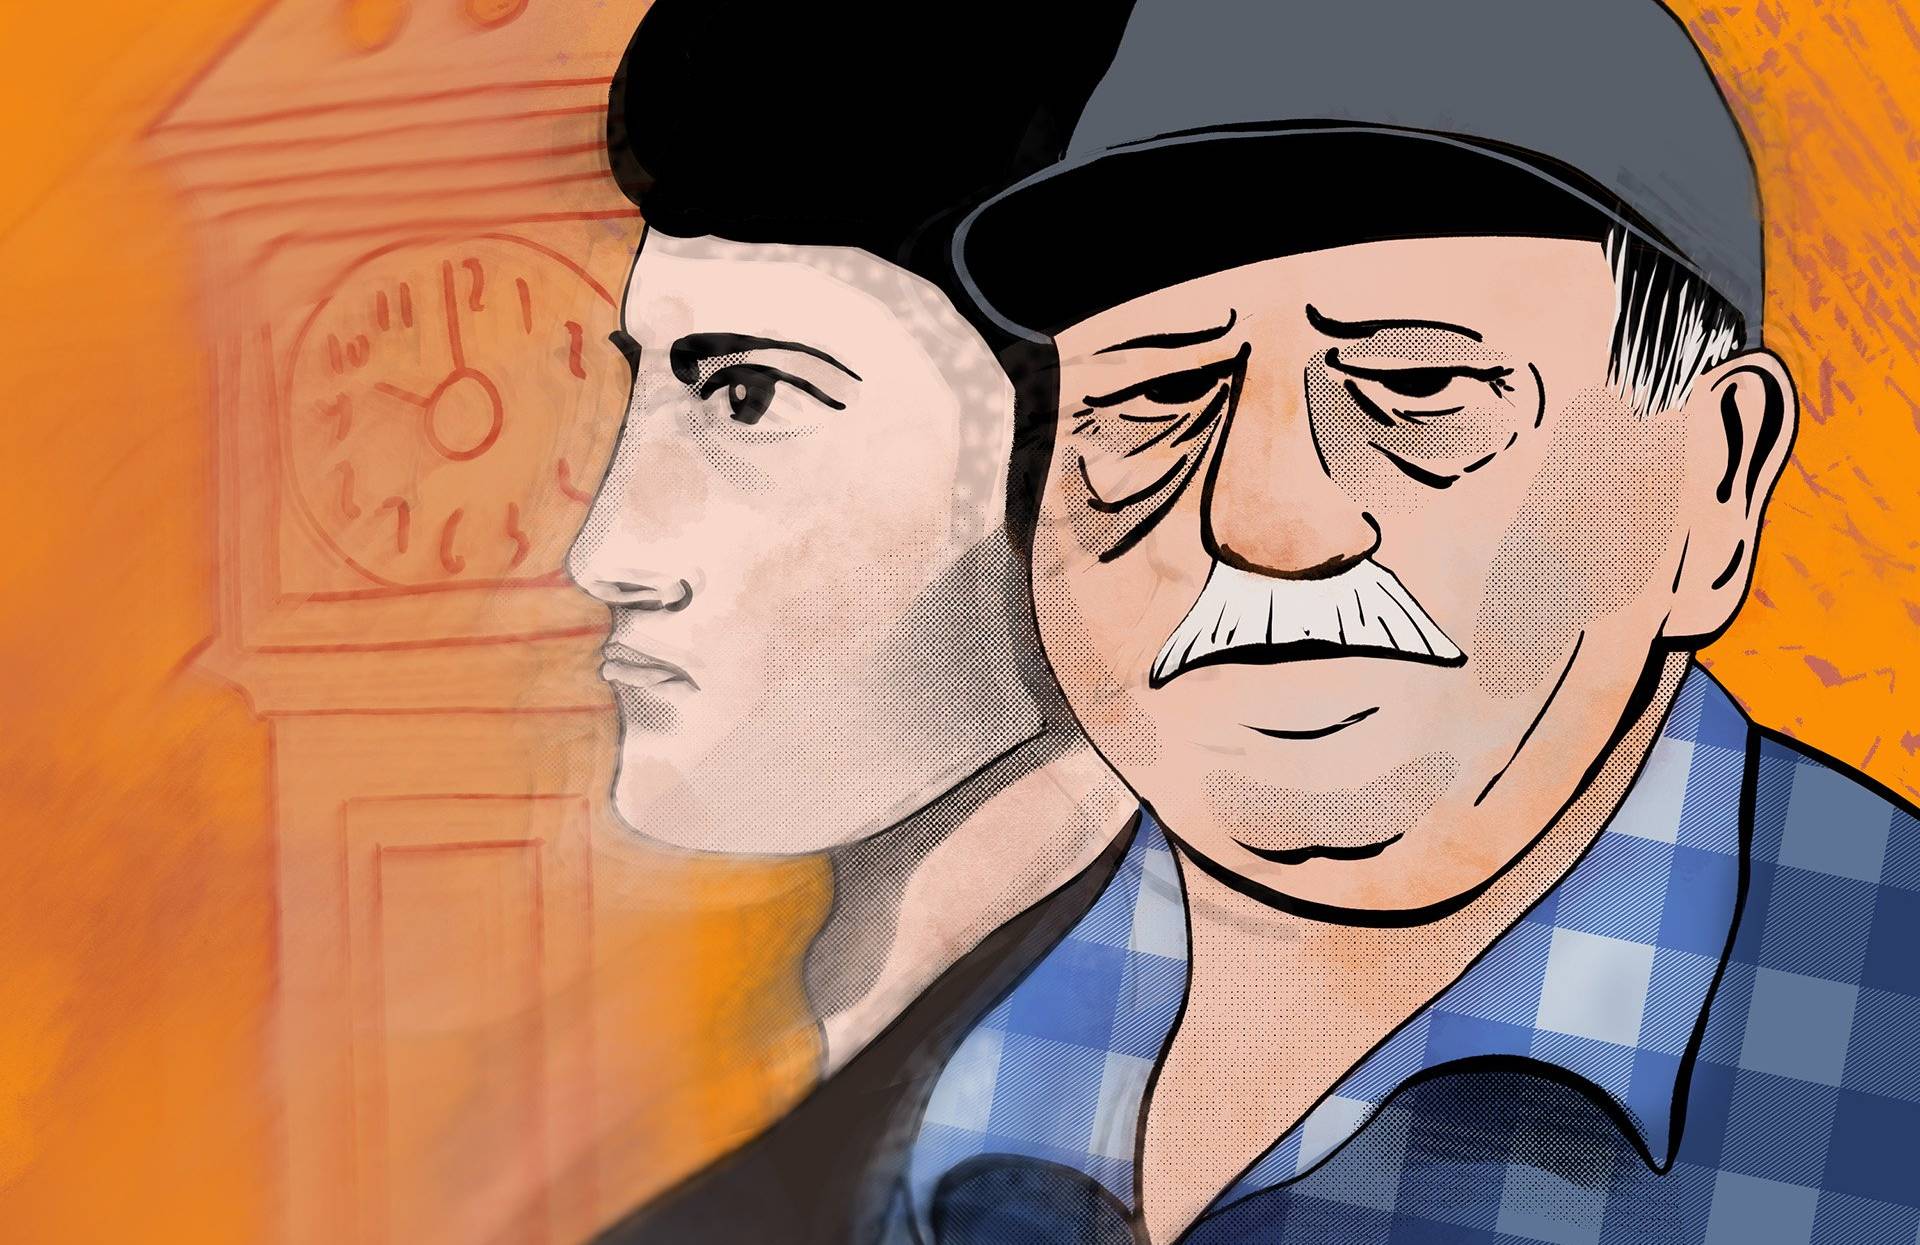 Ilustracja przedstawiająca starszego mężczyznę, za którym widać profil młodego chłopaka.